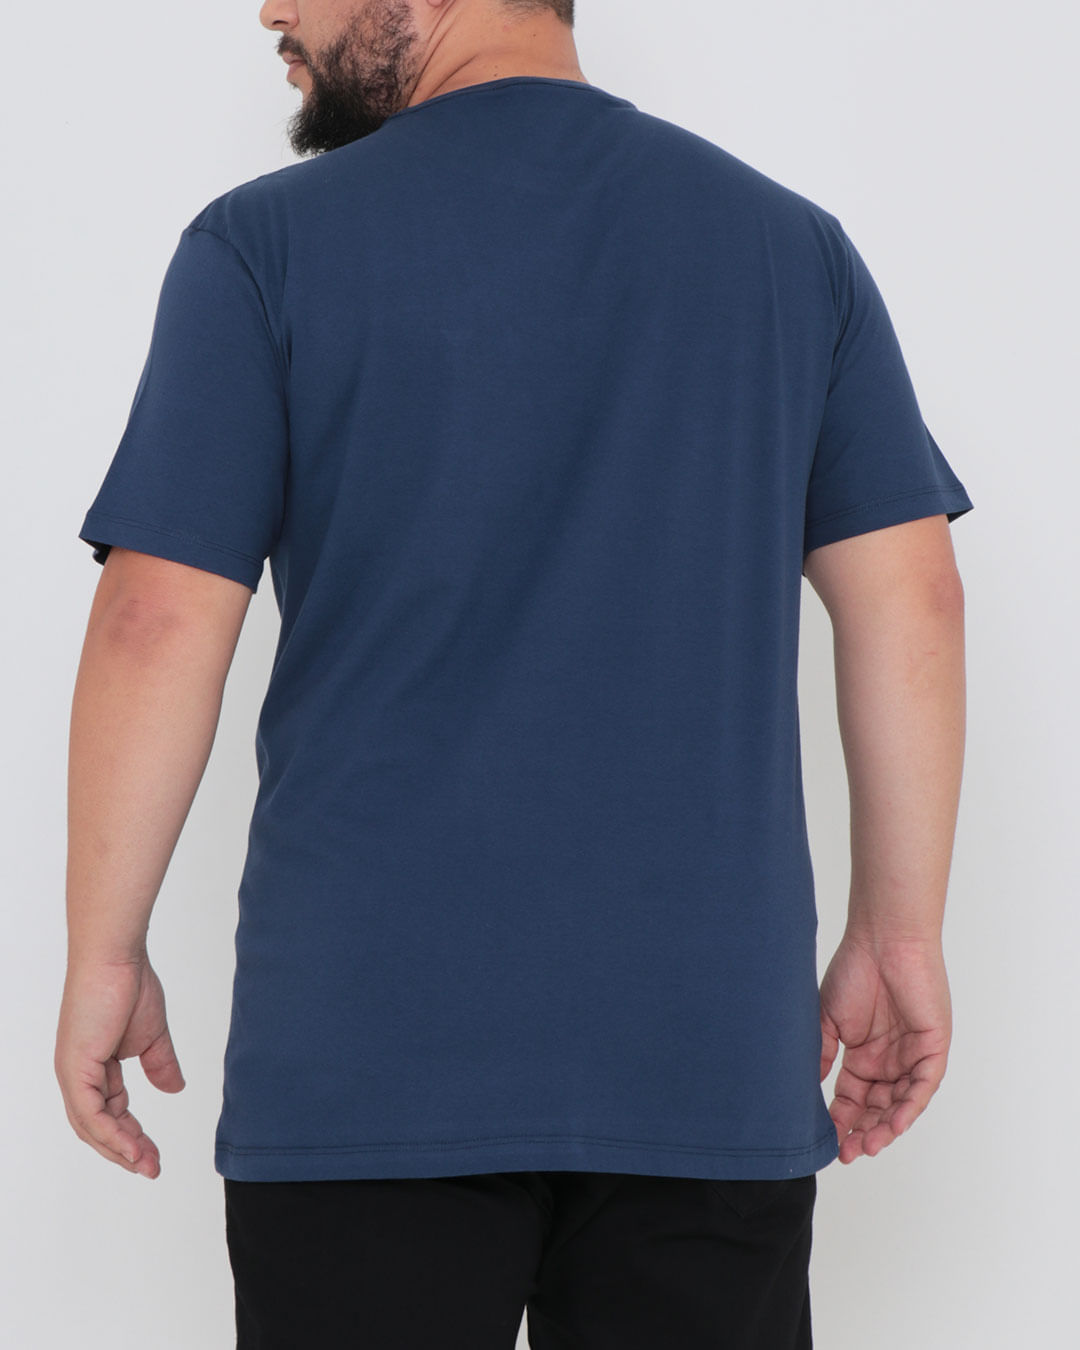 Camiseta-Plus-Size-Basica-Azul-Marinho-